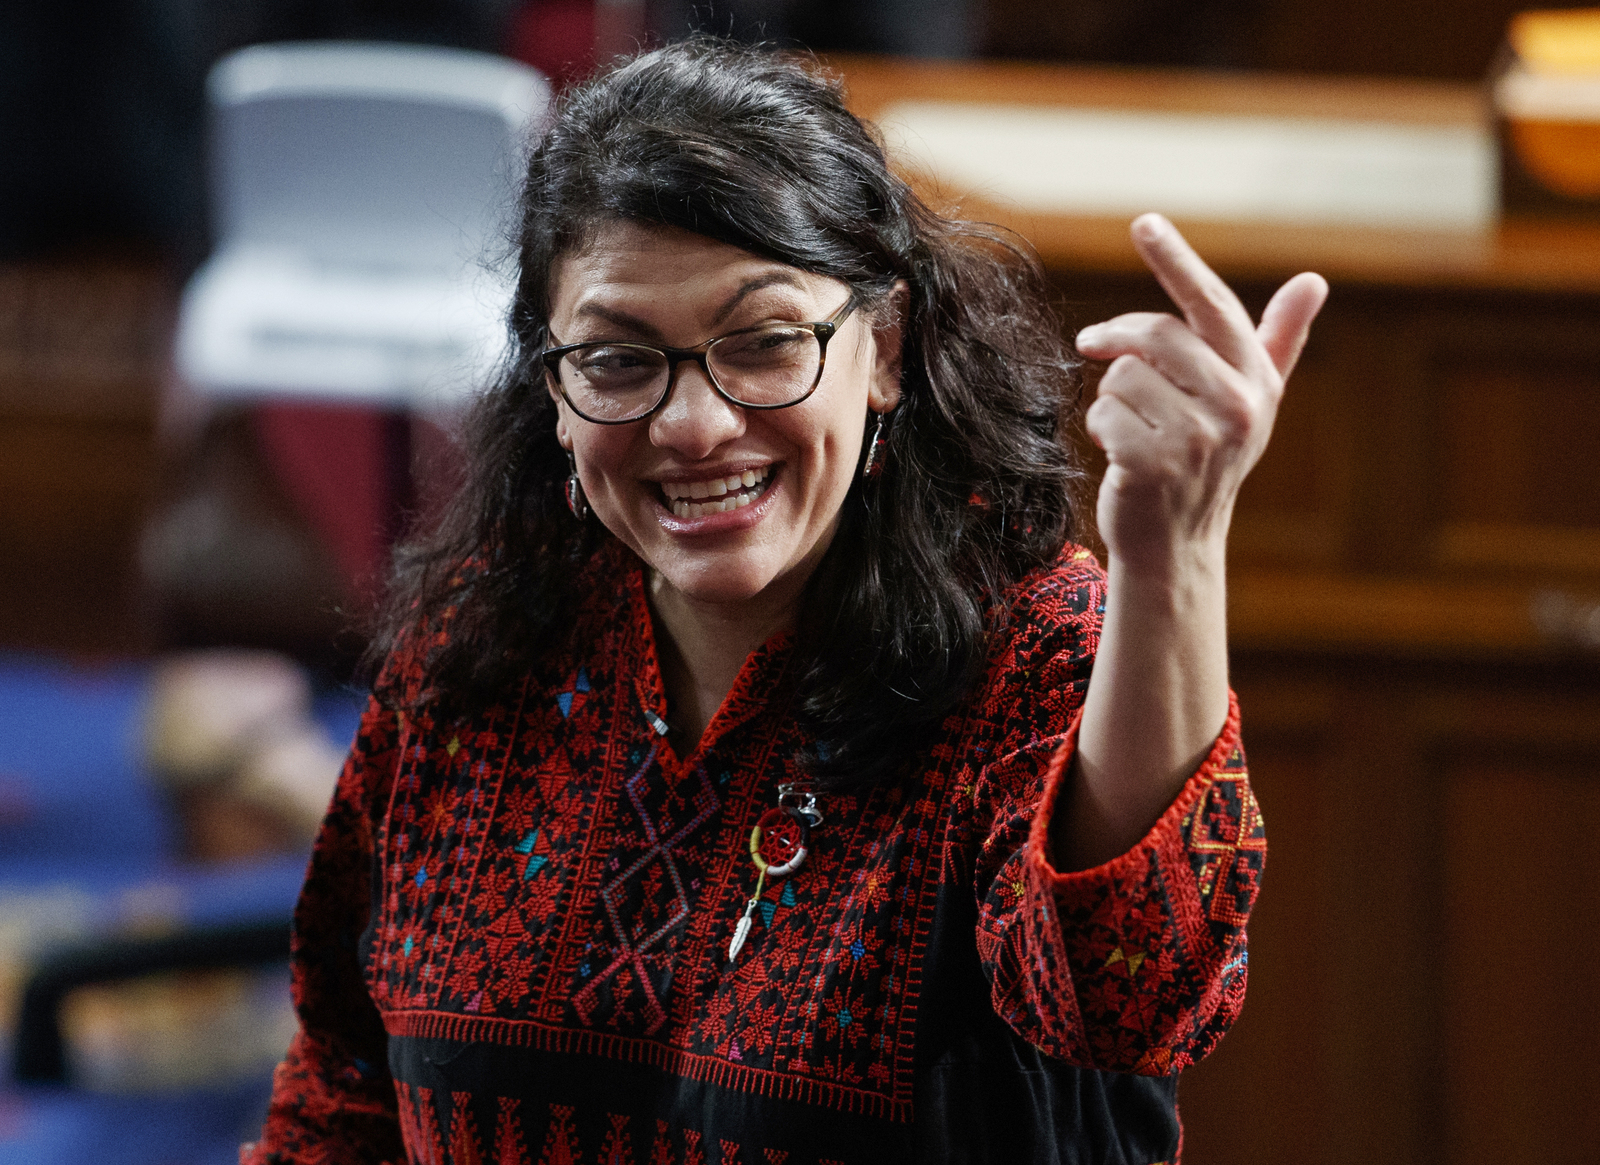 Apoya. La representante demócrata Rashida Tlaib sonríe en la Cámara de Representantes en el Capitolio. (ARCHIVO)